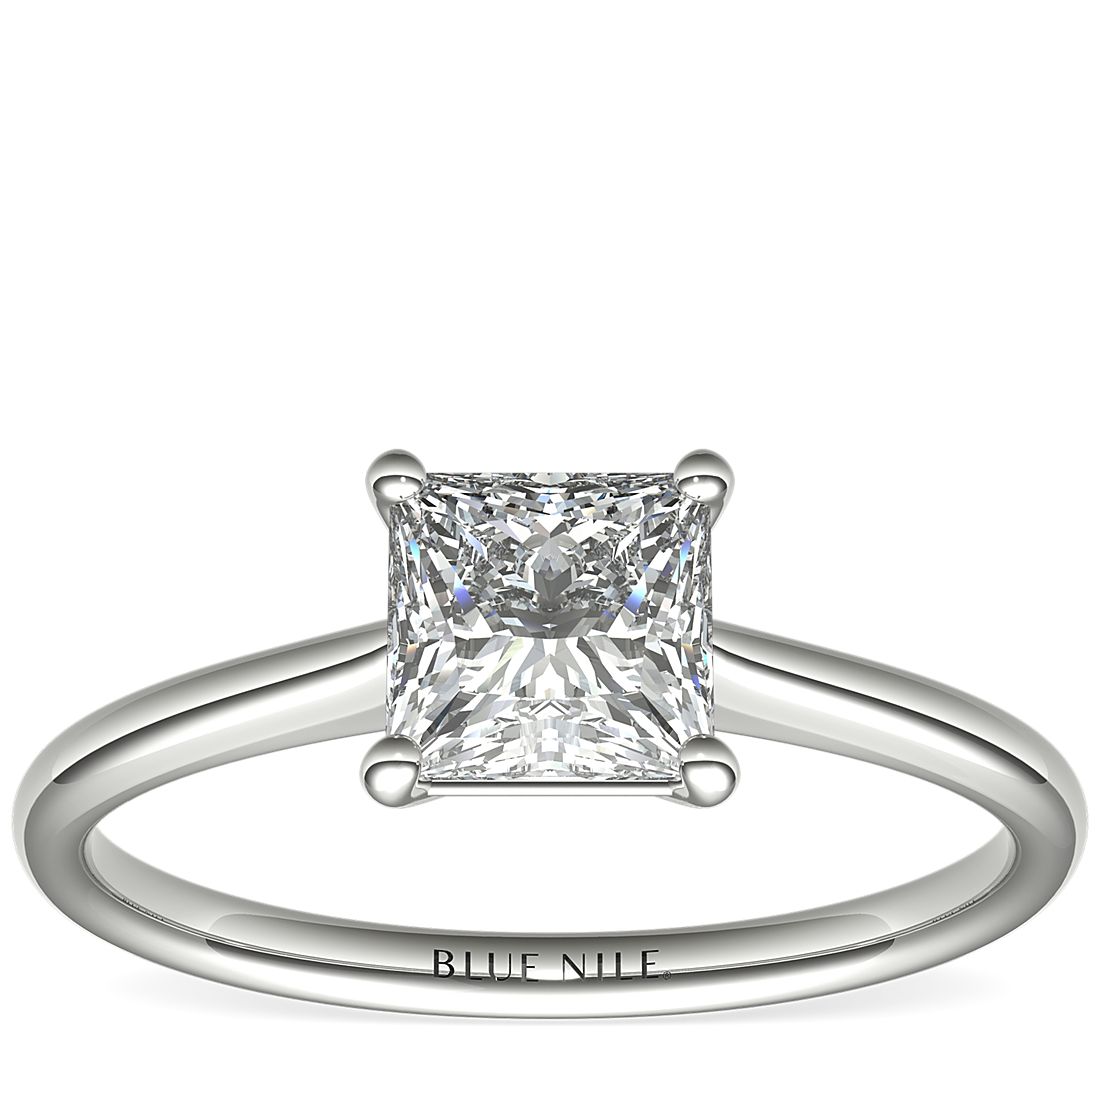 Blue Nile Petite Solitaire 0.31-Carat Cushion-Cut Diamond Ring in Platinum